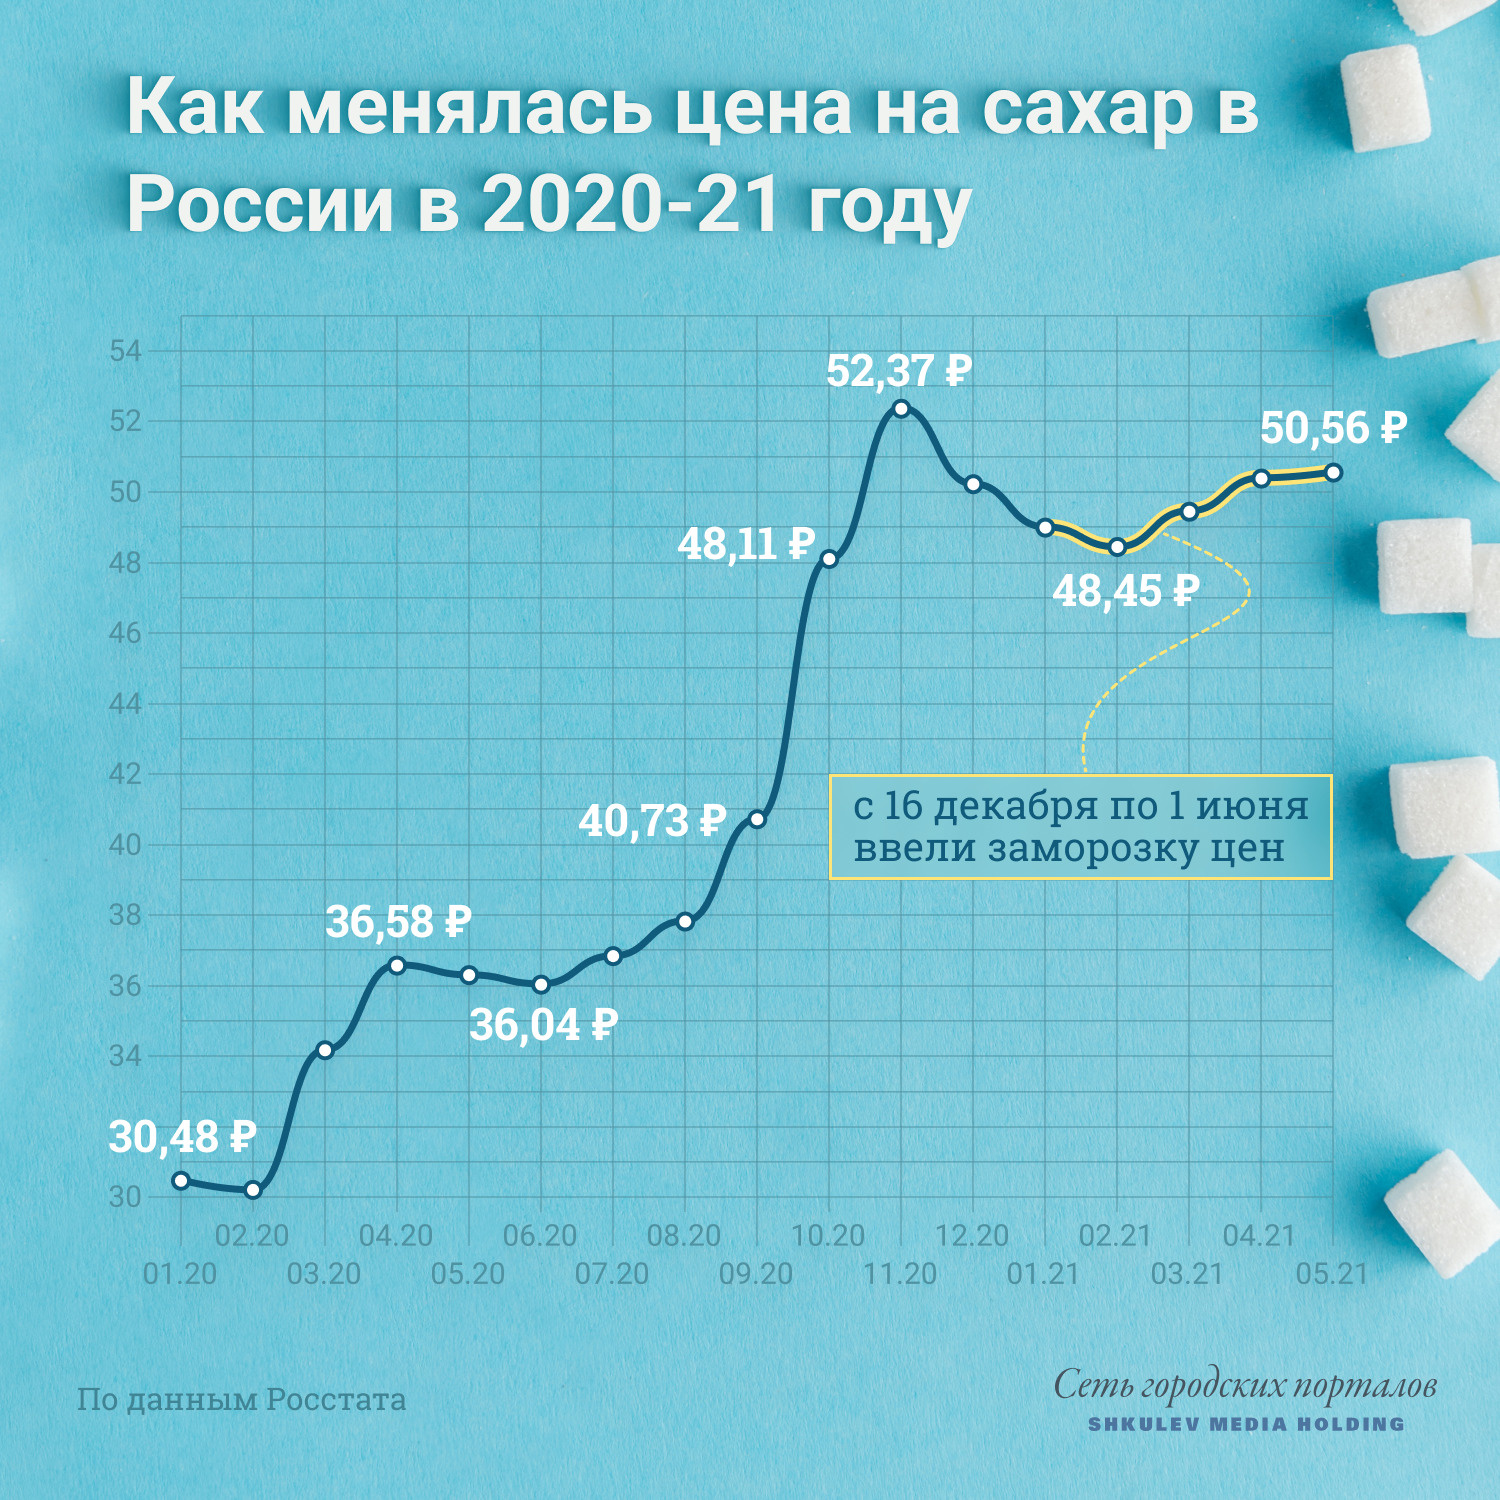 Цены на сахар в конце 2020 года выросли примерно на 60%, среди причин называют плохой урожай сахарной свеклы и пандемию